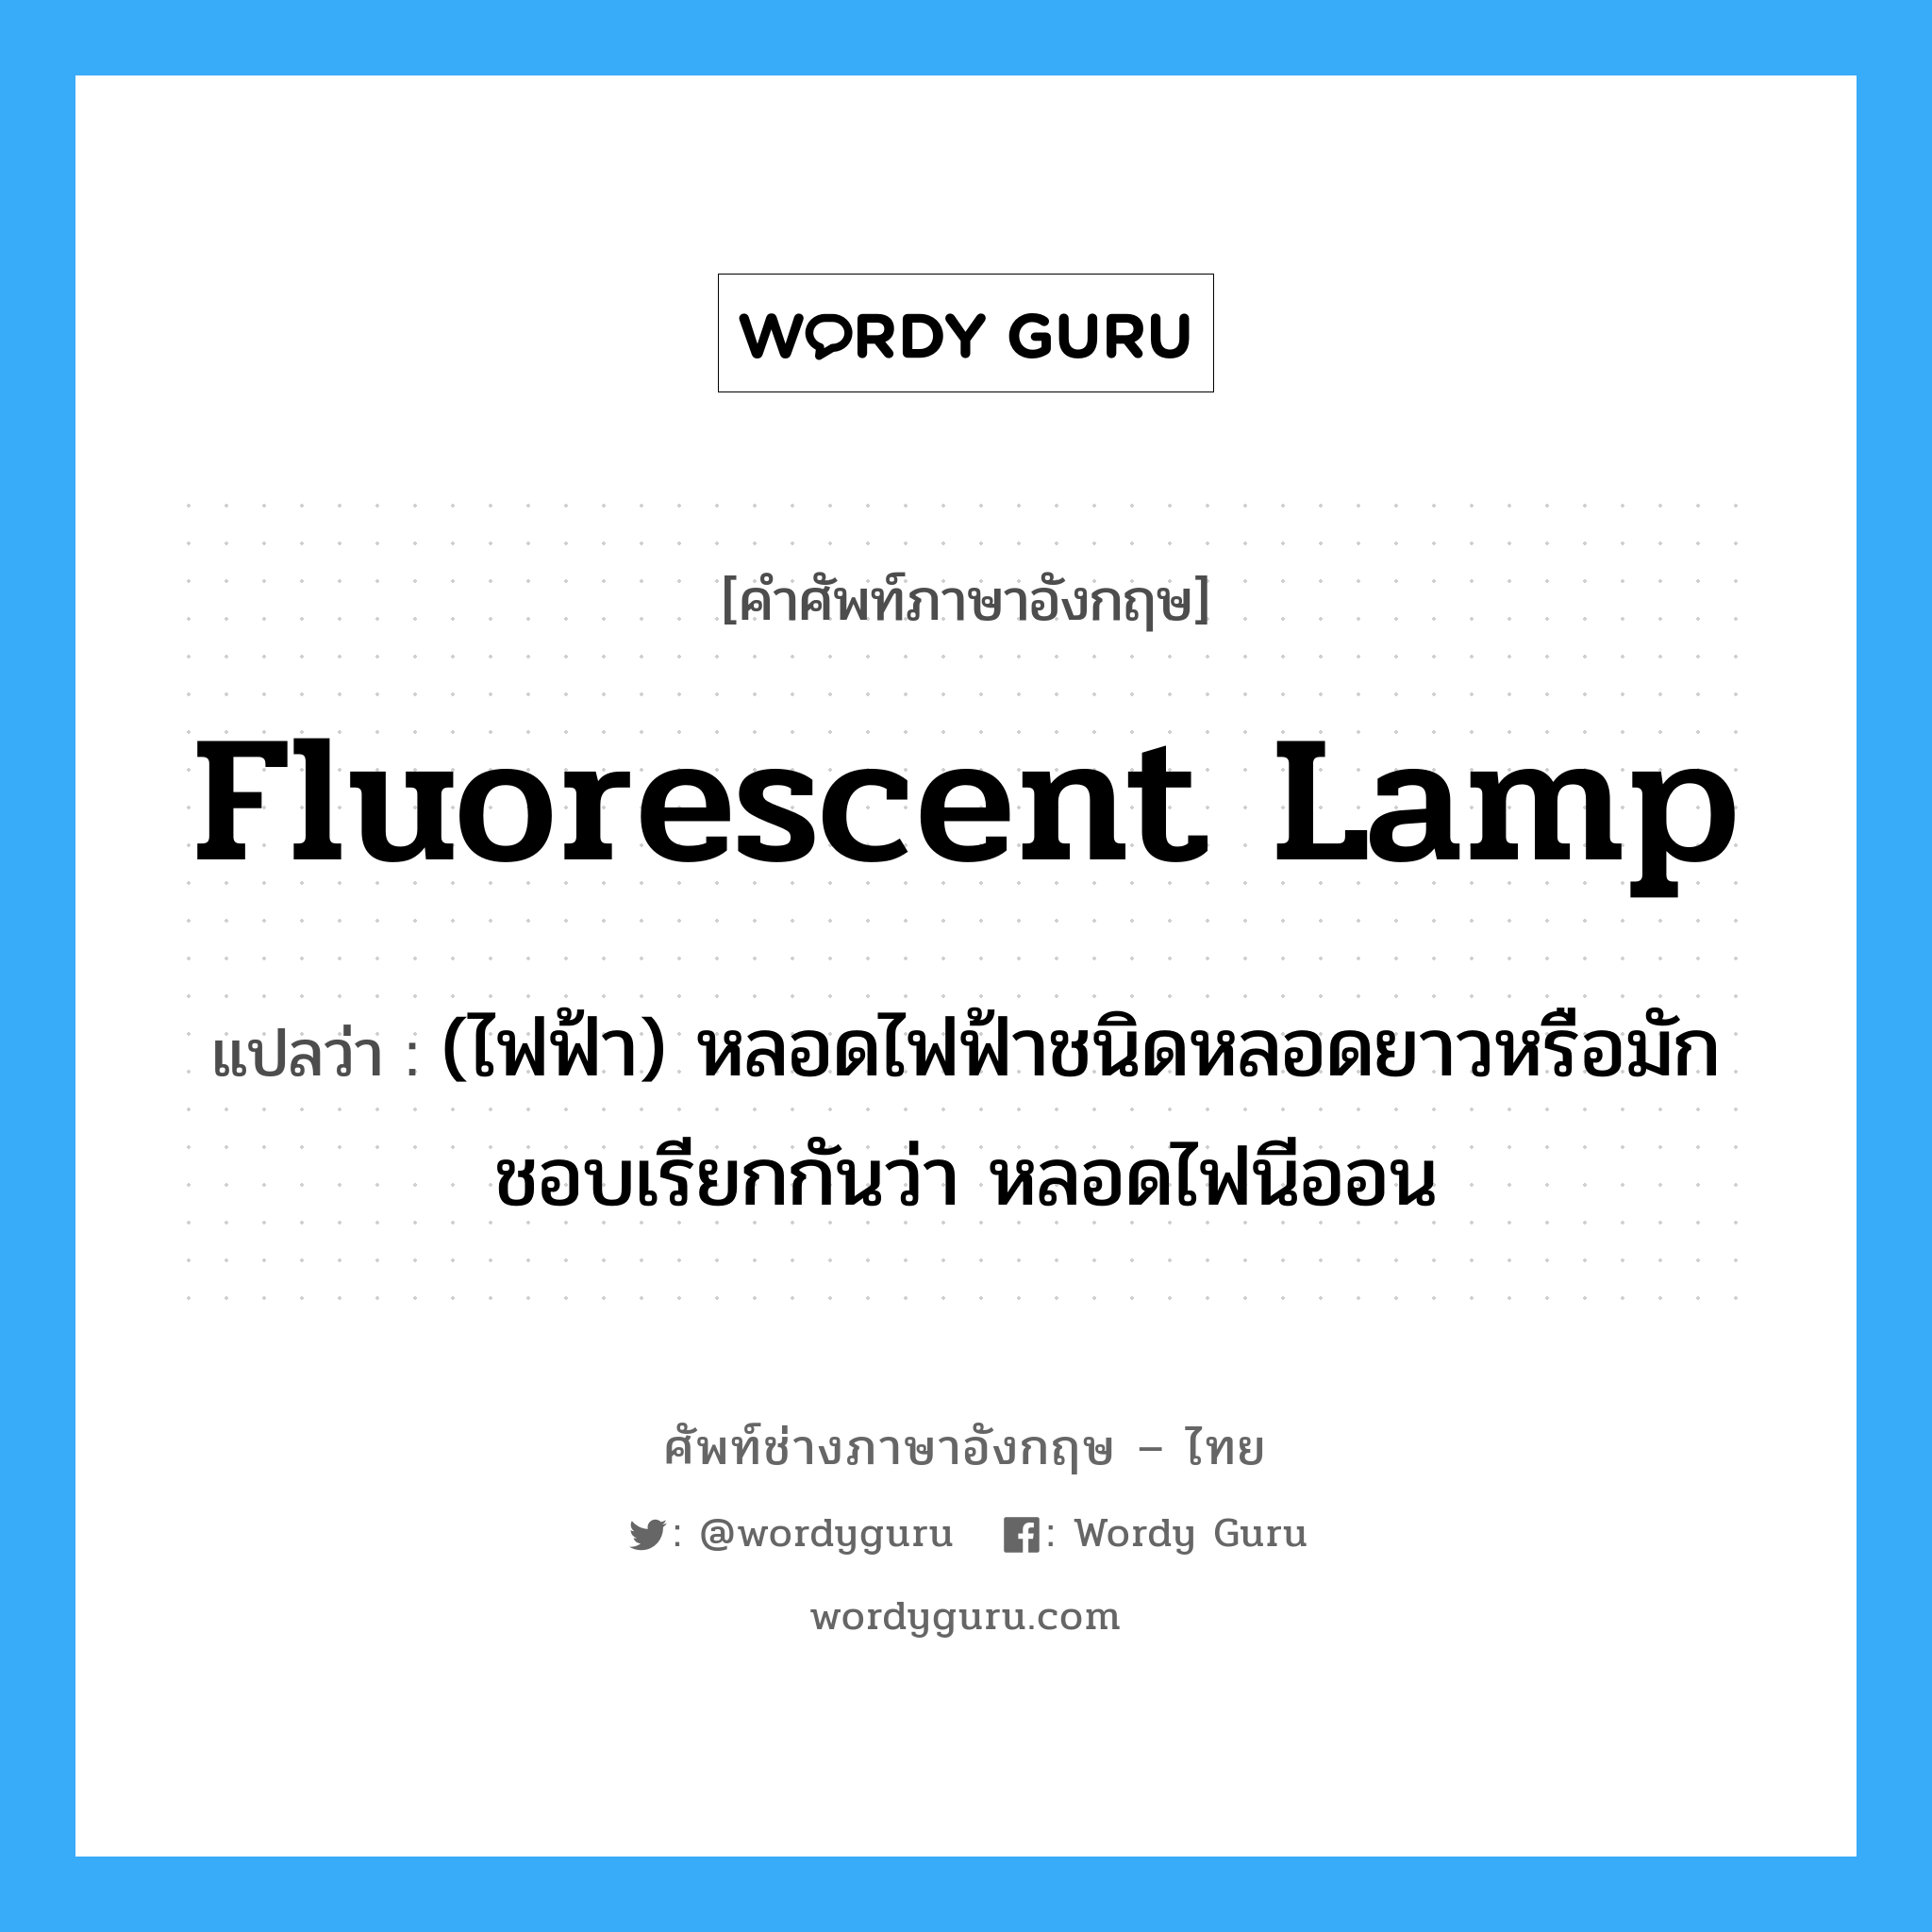 fluorescent lamp แปลว่า?, คำศัพท์ช่างภาษาอังกฤษ - ไทย fluorescent lamp คำศัพท์ภาษาอังกฤษ fluorescent lamp แปลว่า (ไฟฟ้า) หลอดไฟฟ้าชนิดหลอดยาวหรือมักชอบเรียกกันว่า หลอดไฟนีออน